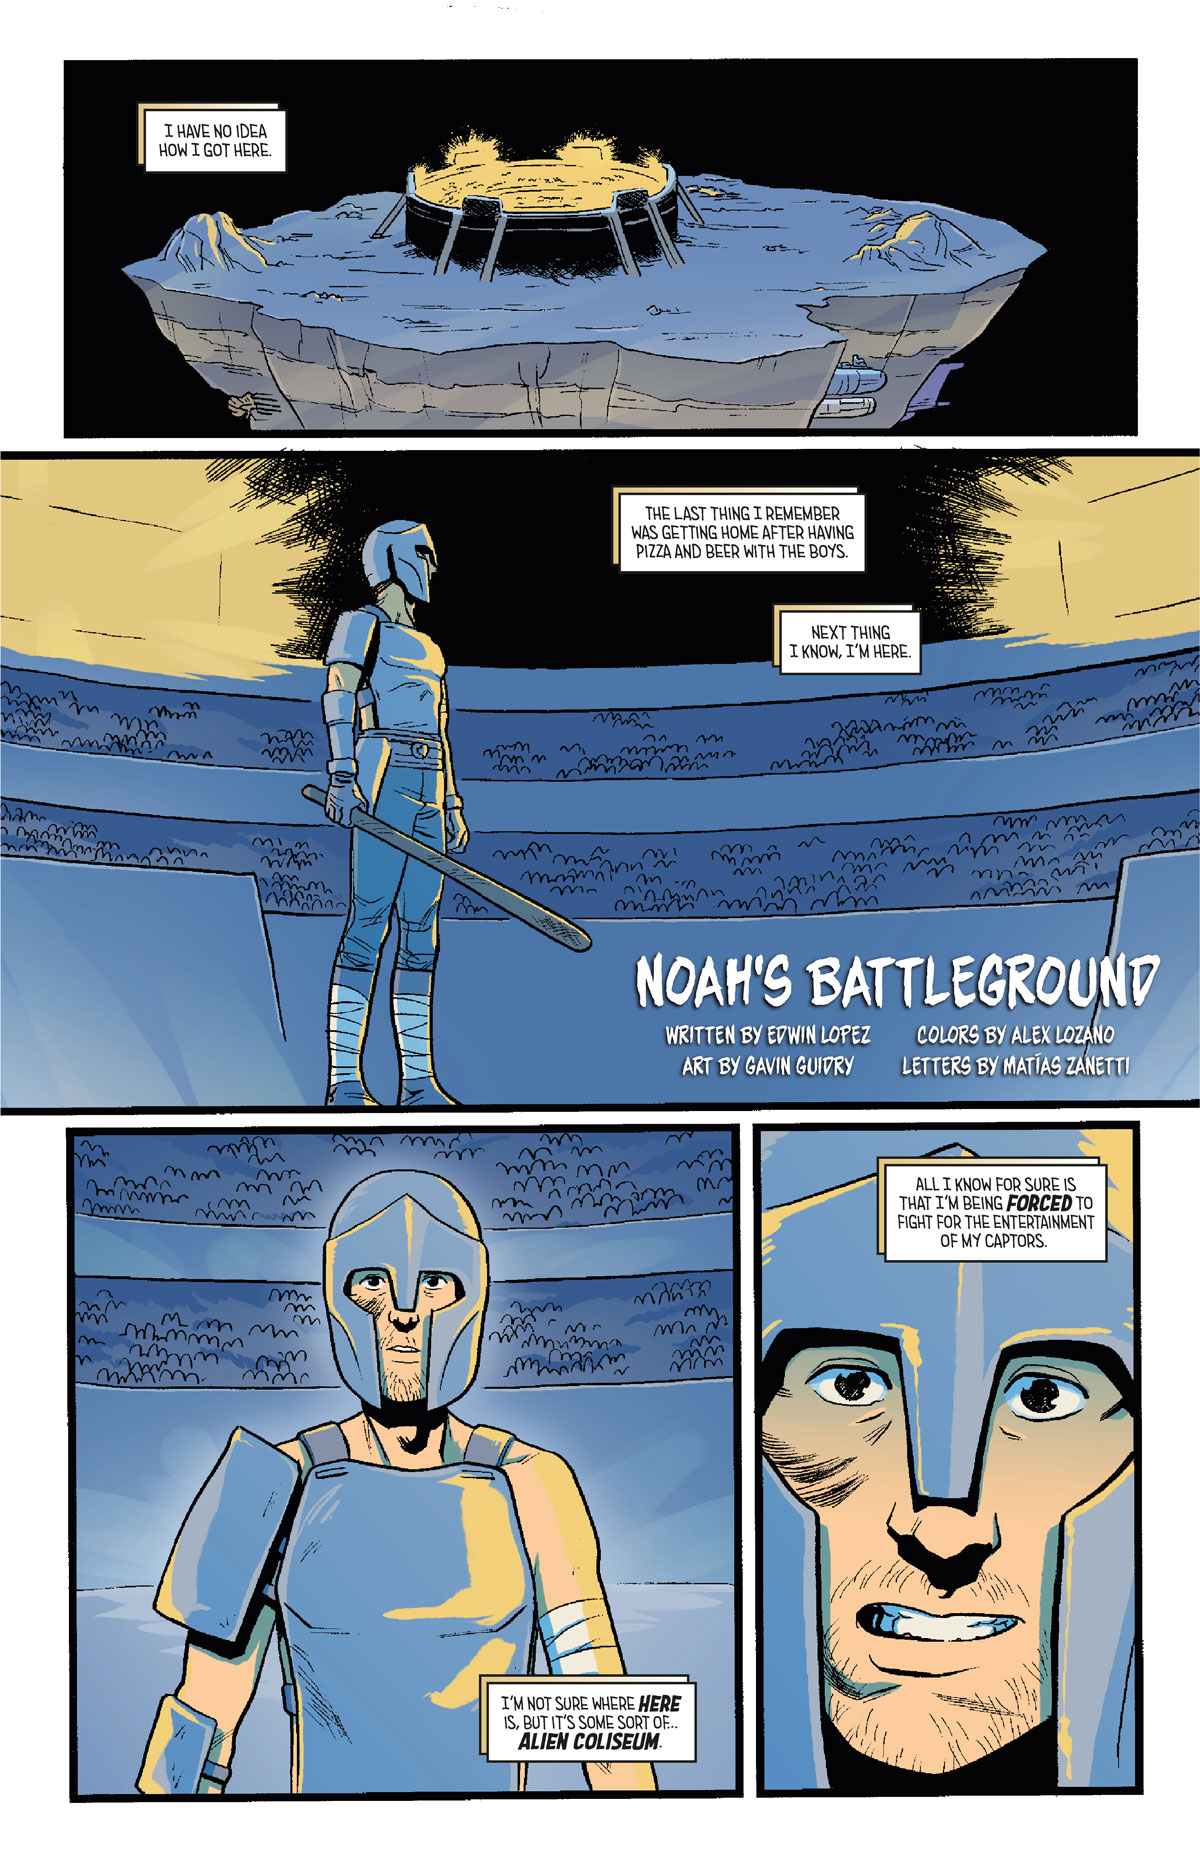 page 1 of noah's battleground